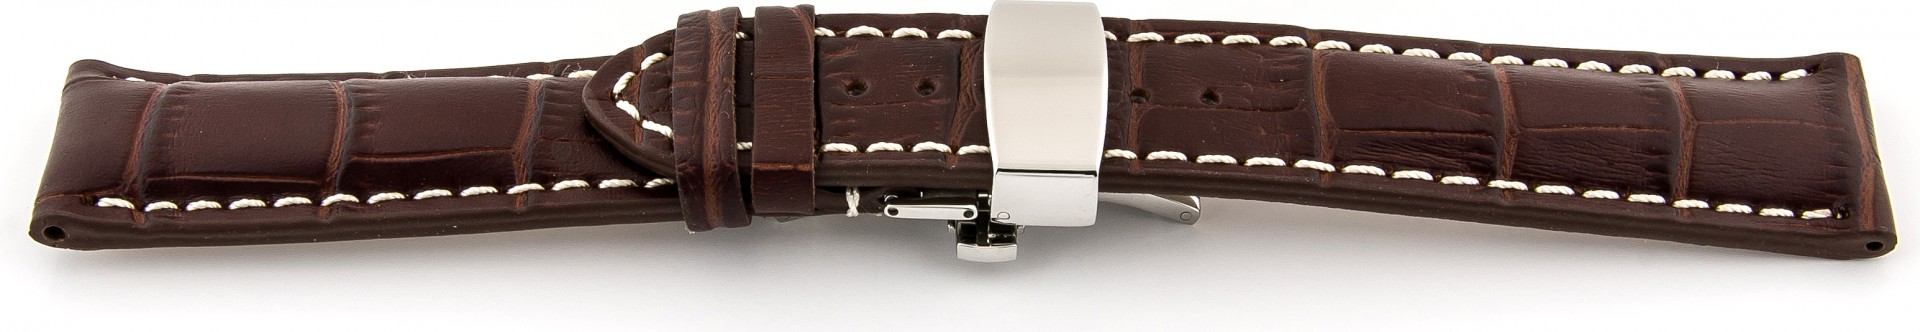   Uhrenarmband Kroko Look 17J Butterfly-Schließe - Extra gepolstert, Leder, geprägt - dunkelbraun mit weißer Naht 